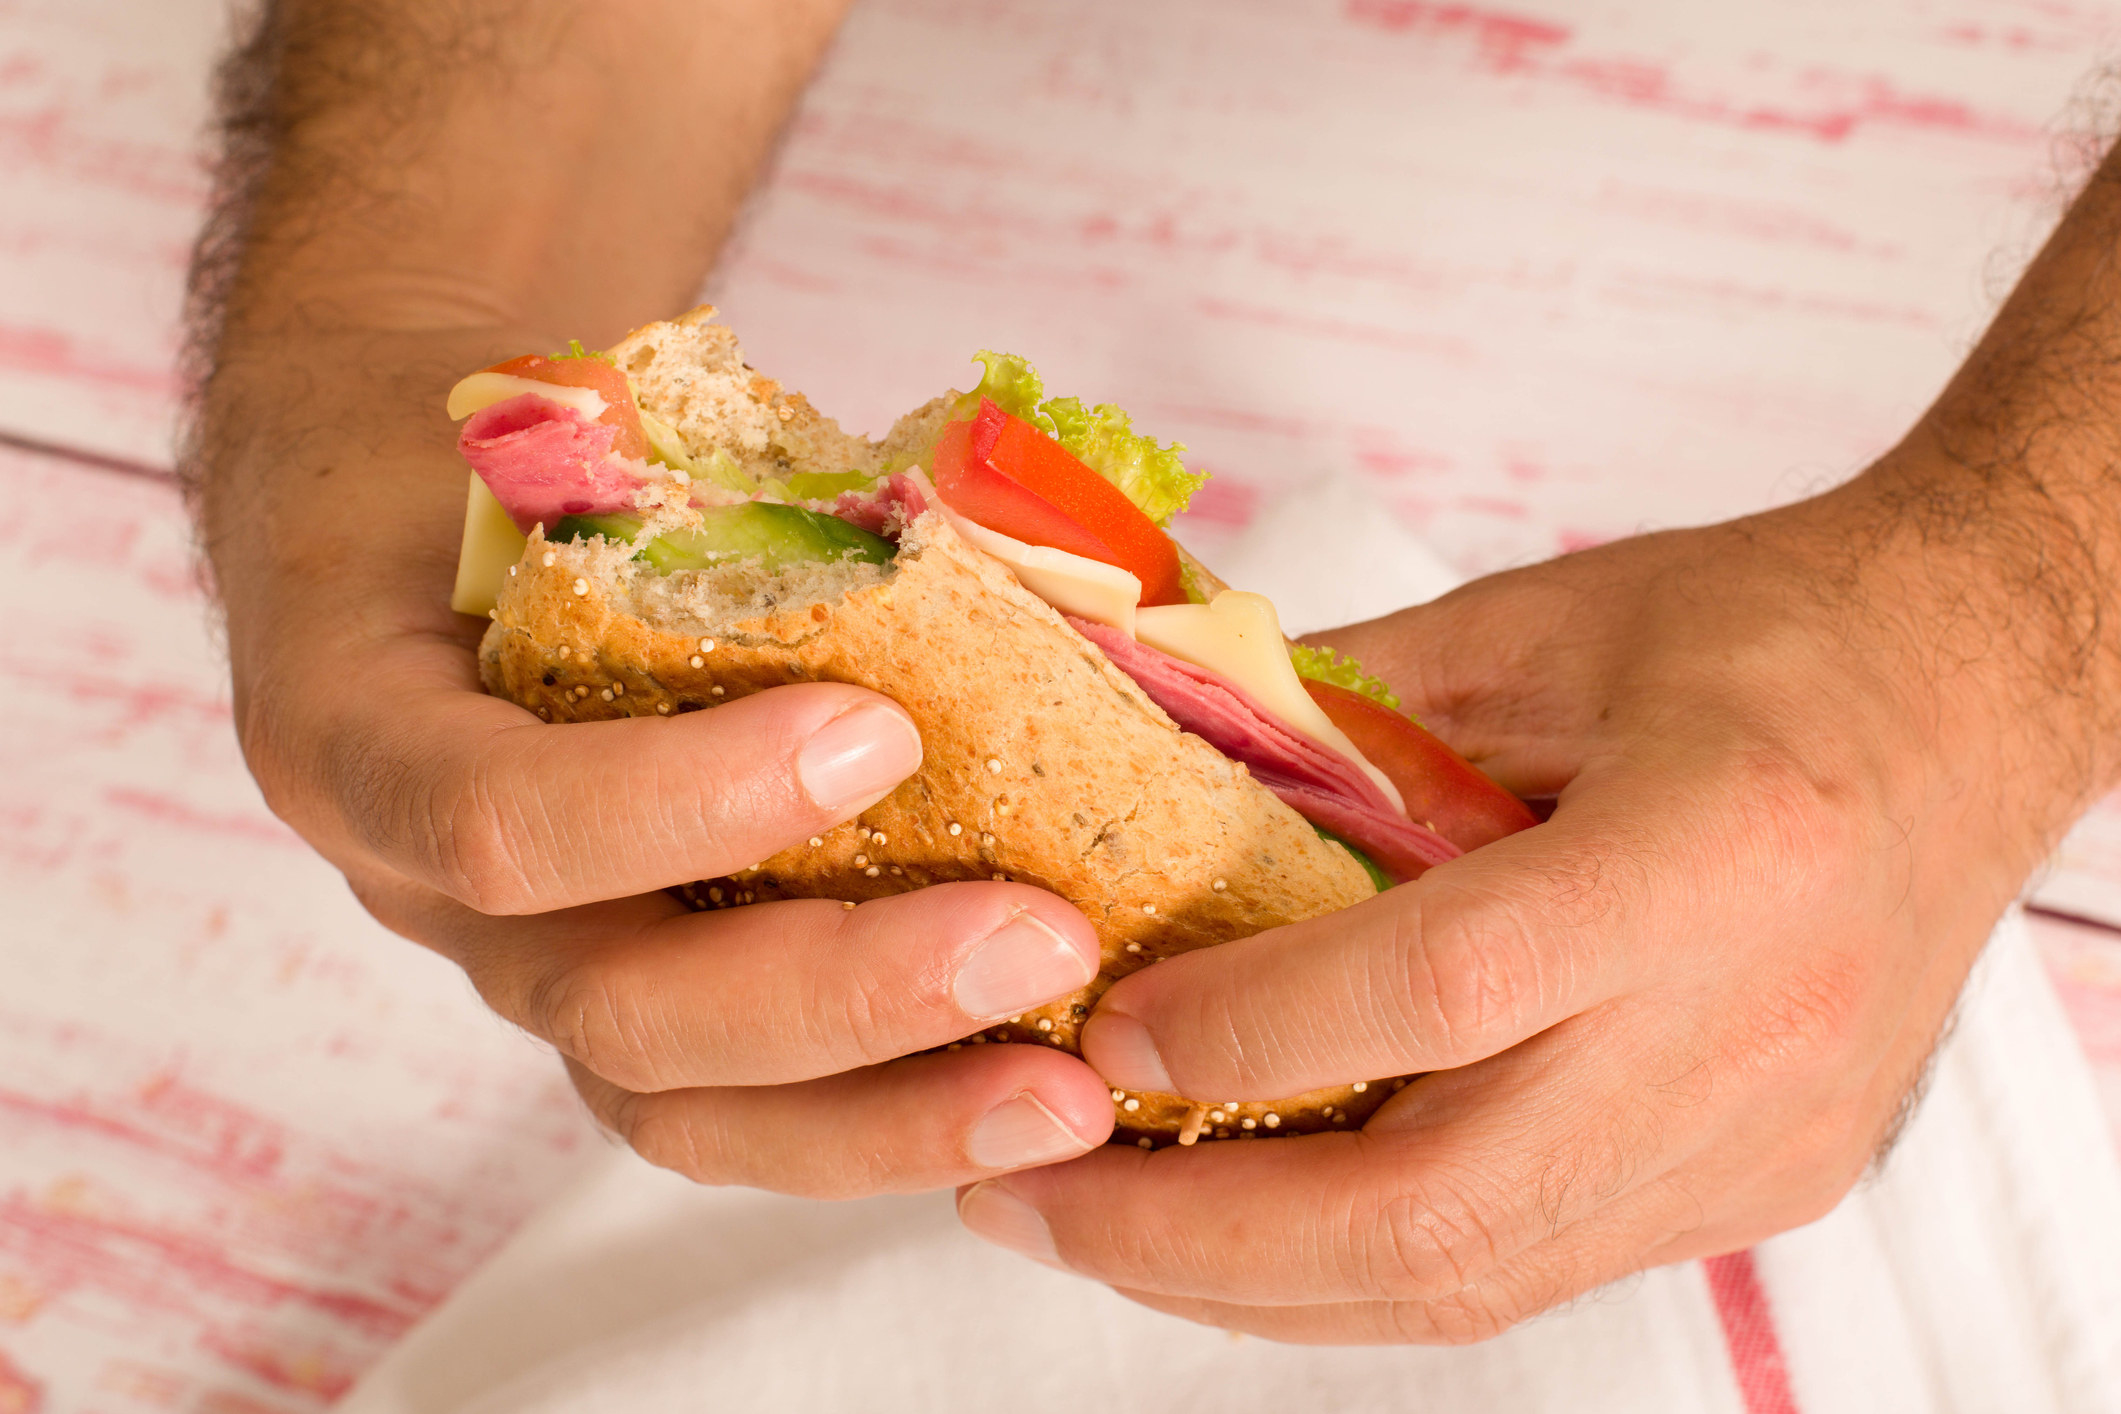 A hand holding a sandwich